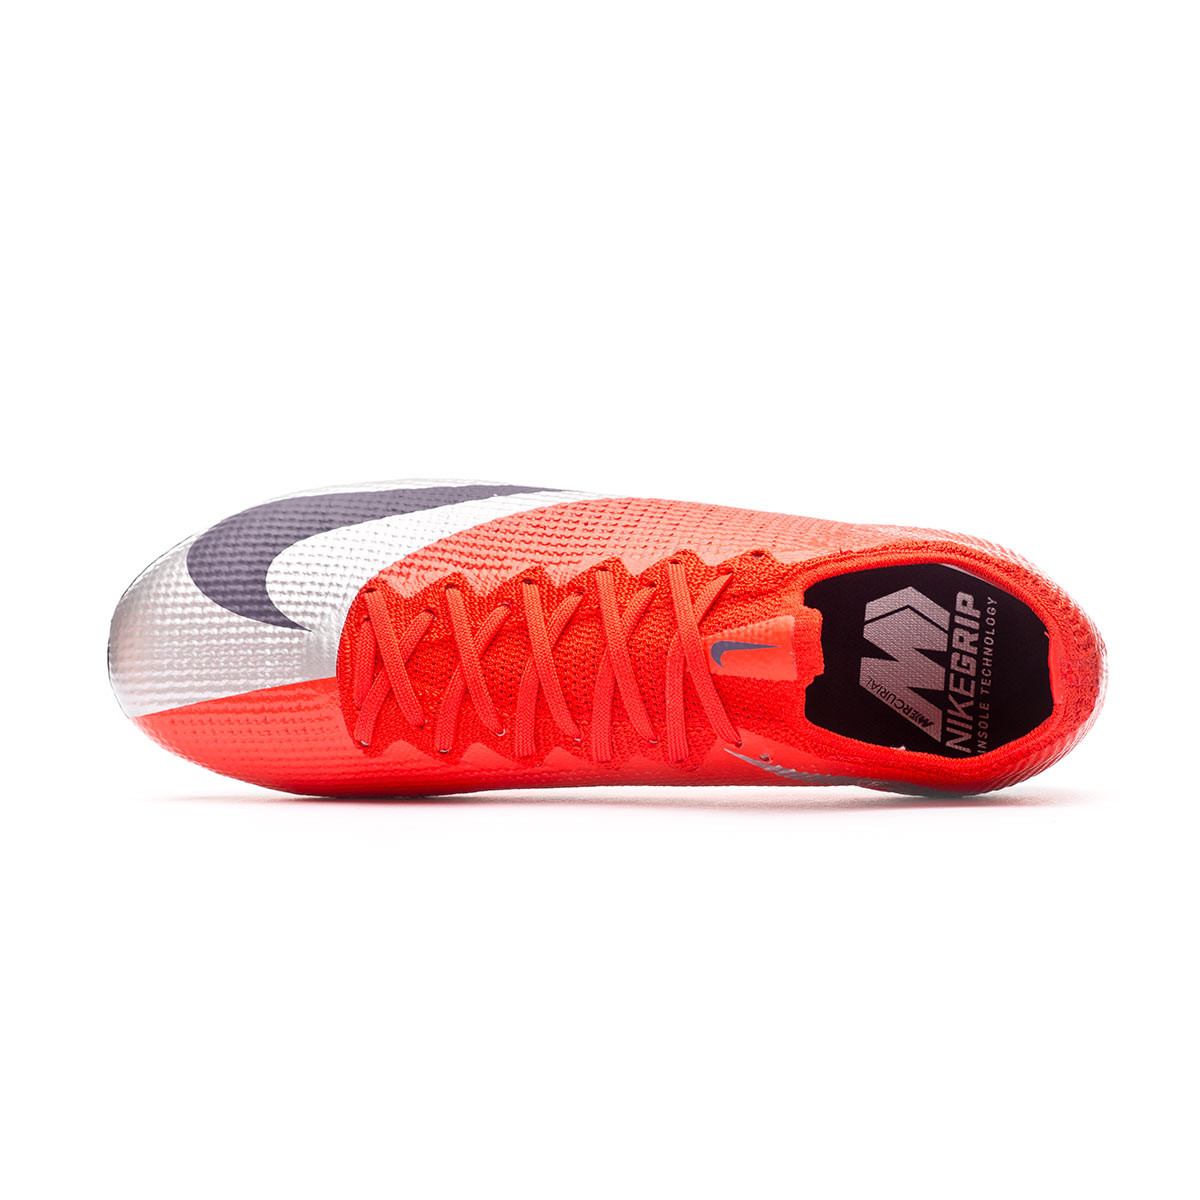 Mercurial Superfly 7 Elite FG 'White Laser Crimson' Nike.